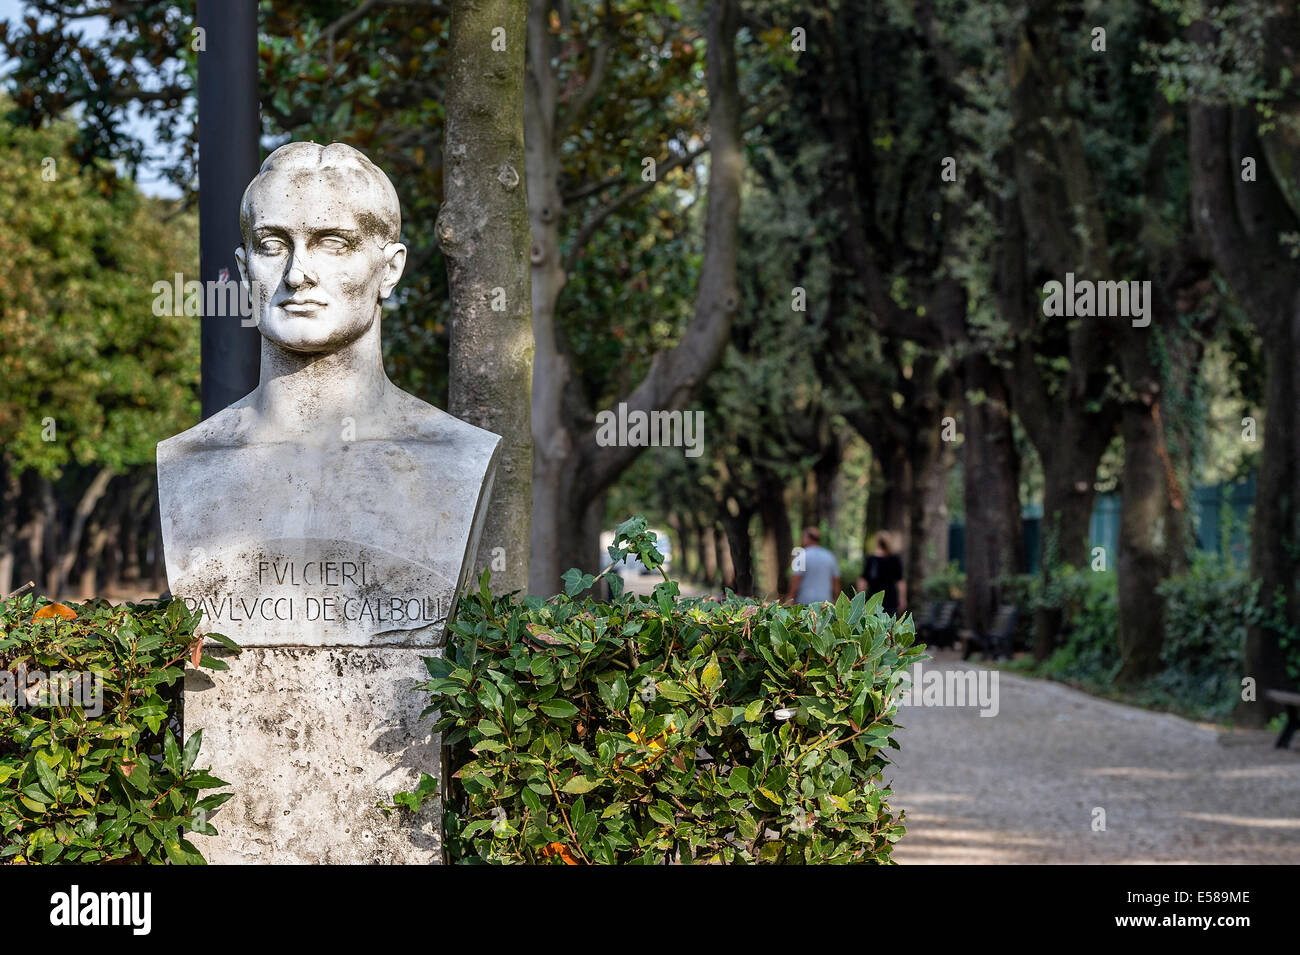 Bust of Fulcieri Paulucci di Calboli in the Villa Borghese, Rome, Italy Stock Photo